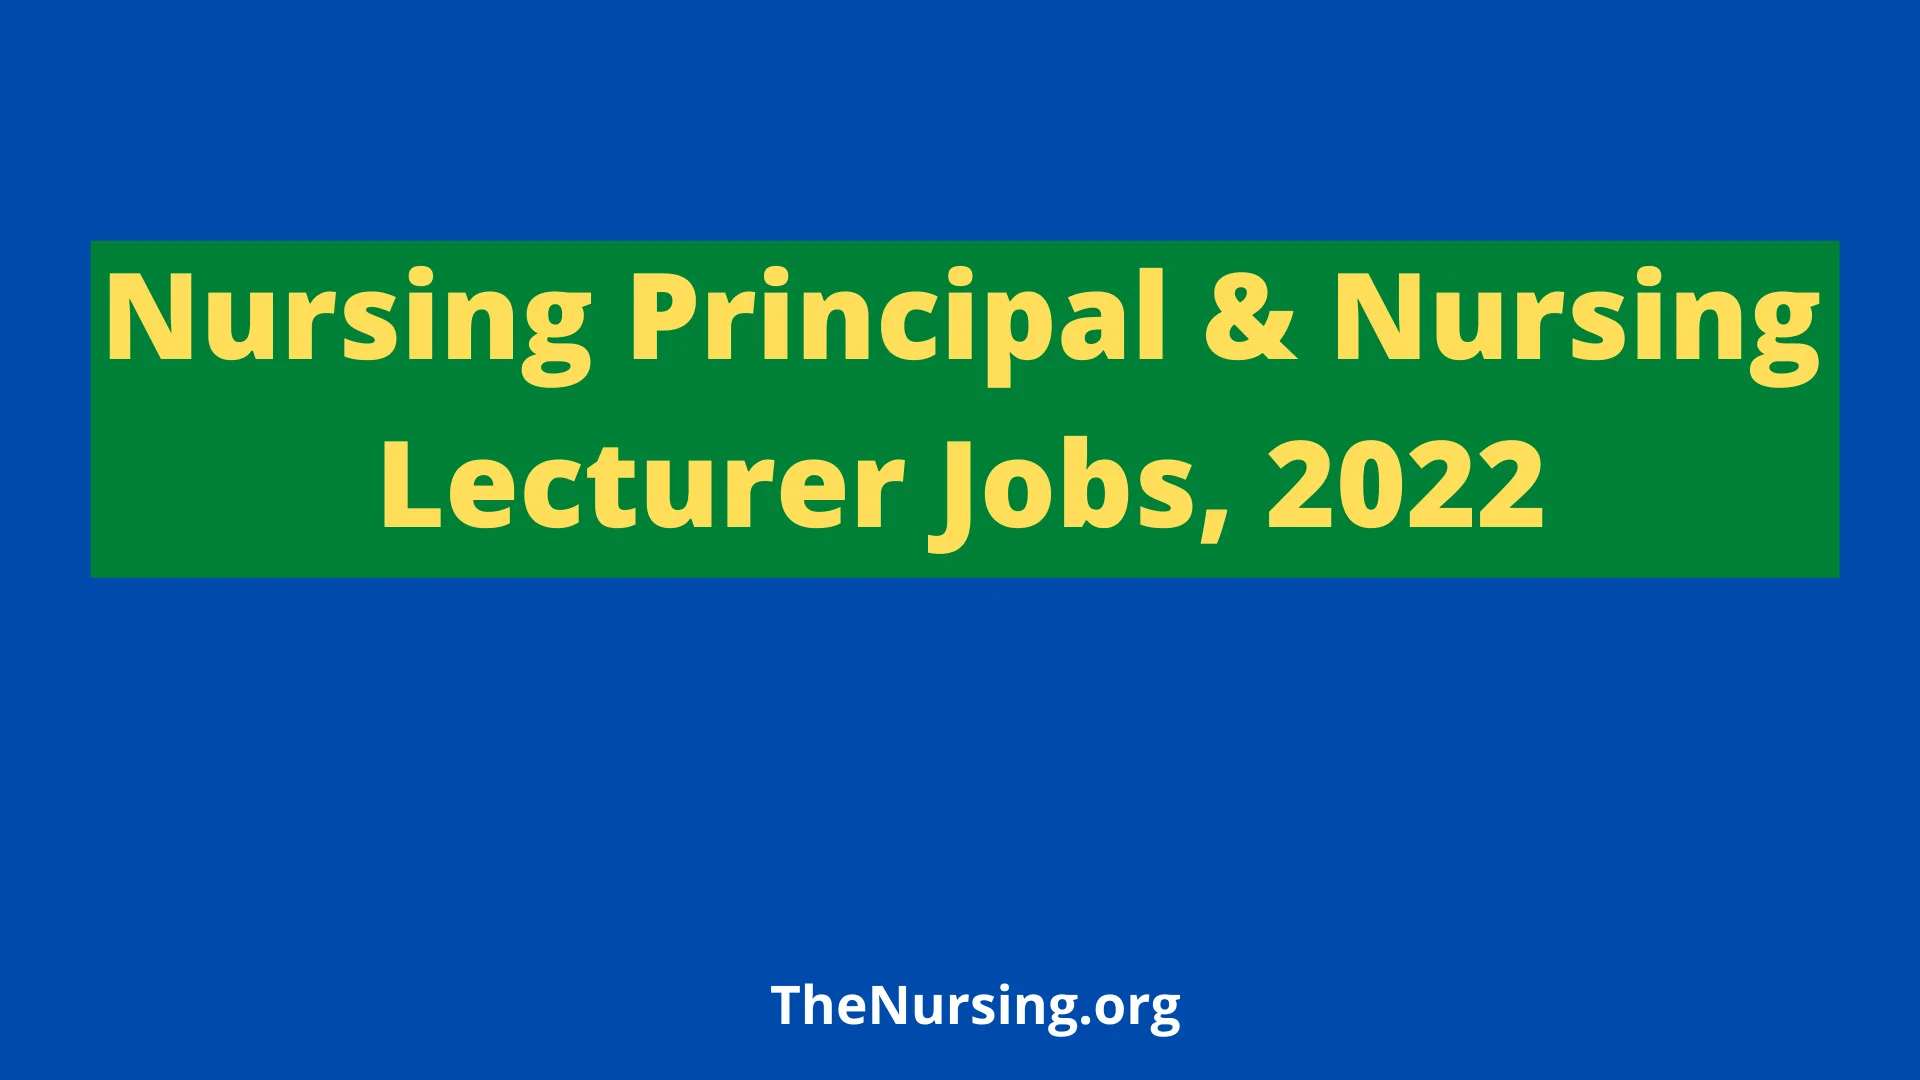 Nursing Principal & Nursing Lecturer Jobs 2022